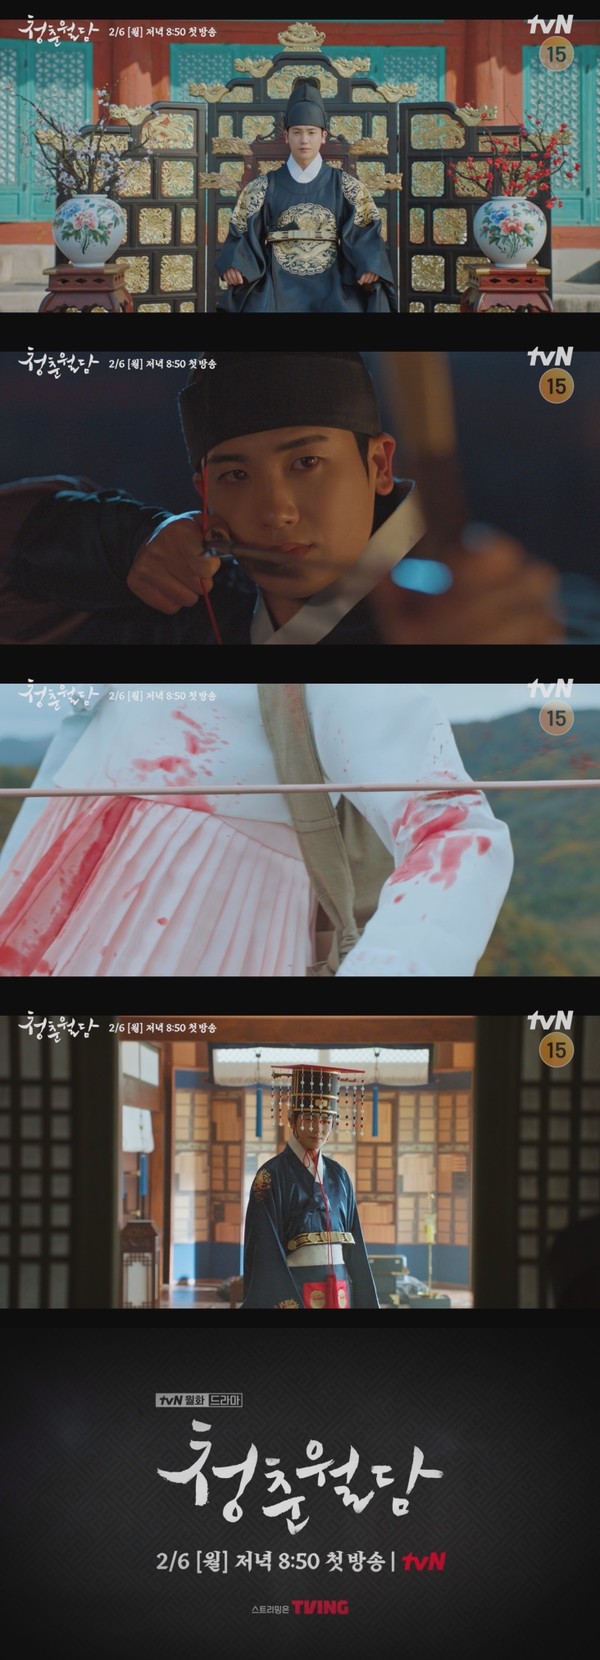 [사진 출처: tvN 새 월화드라마 '청춘월담' 1차 티저 영상 캡처]